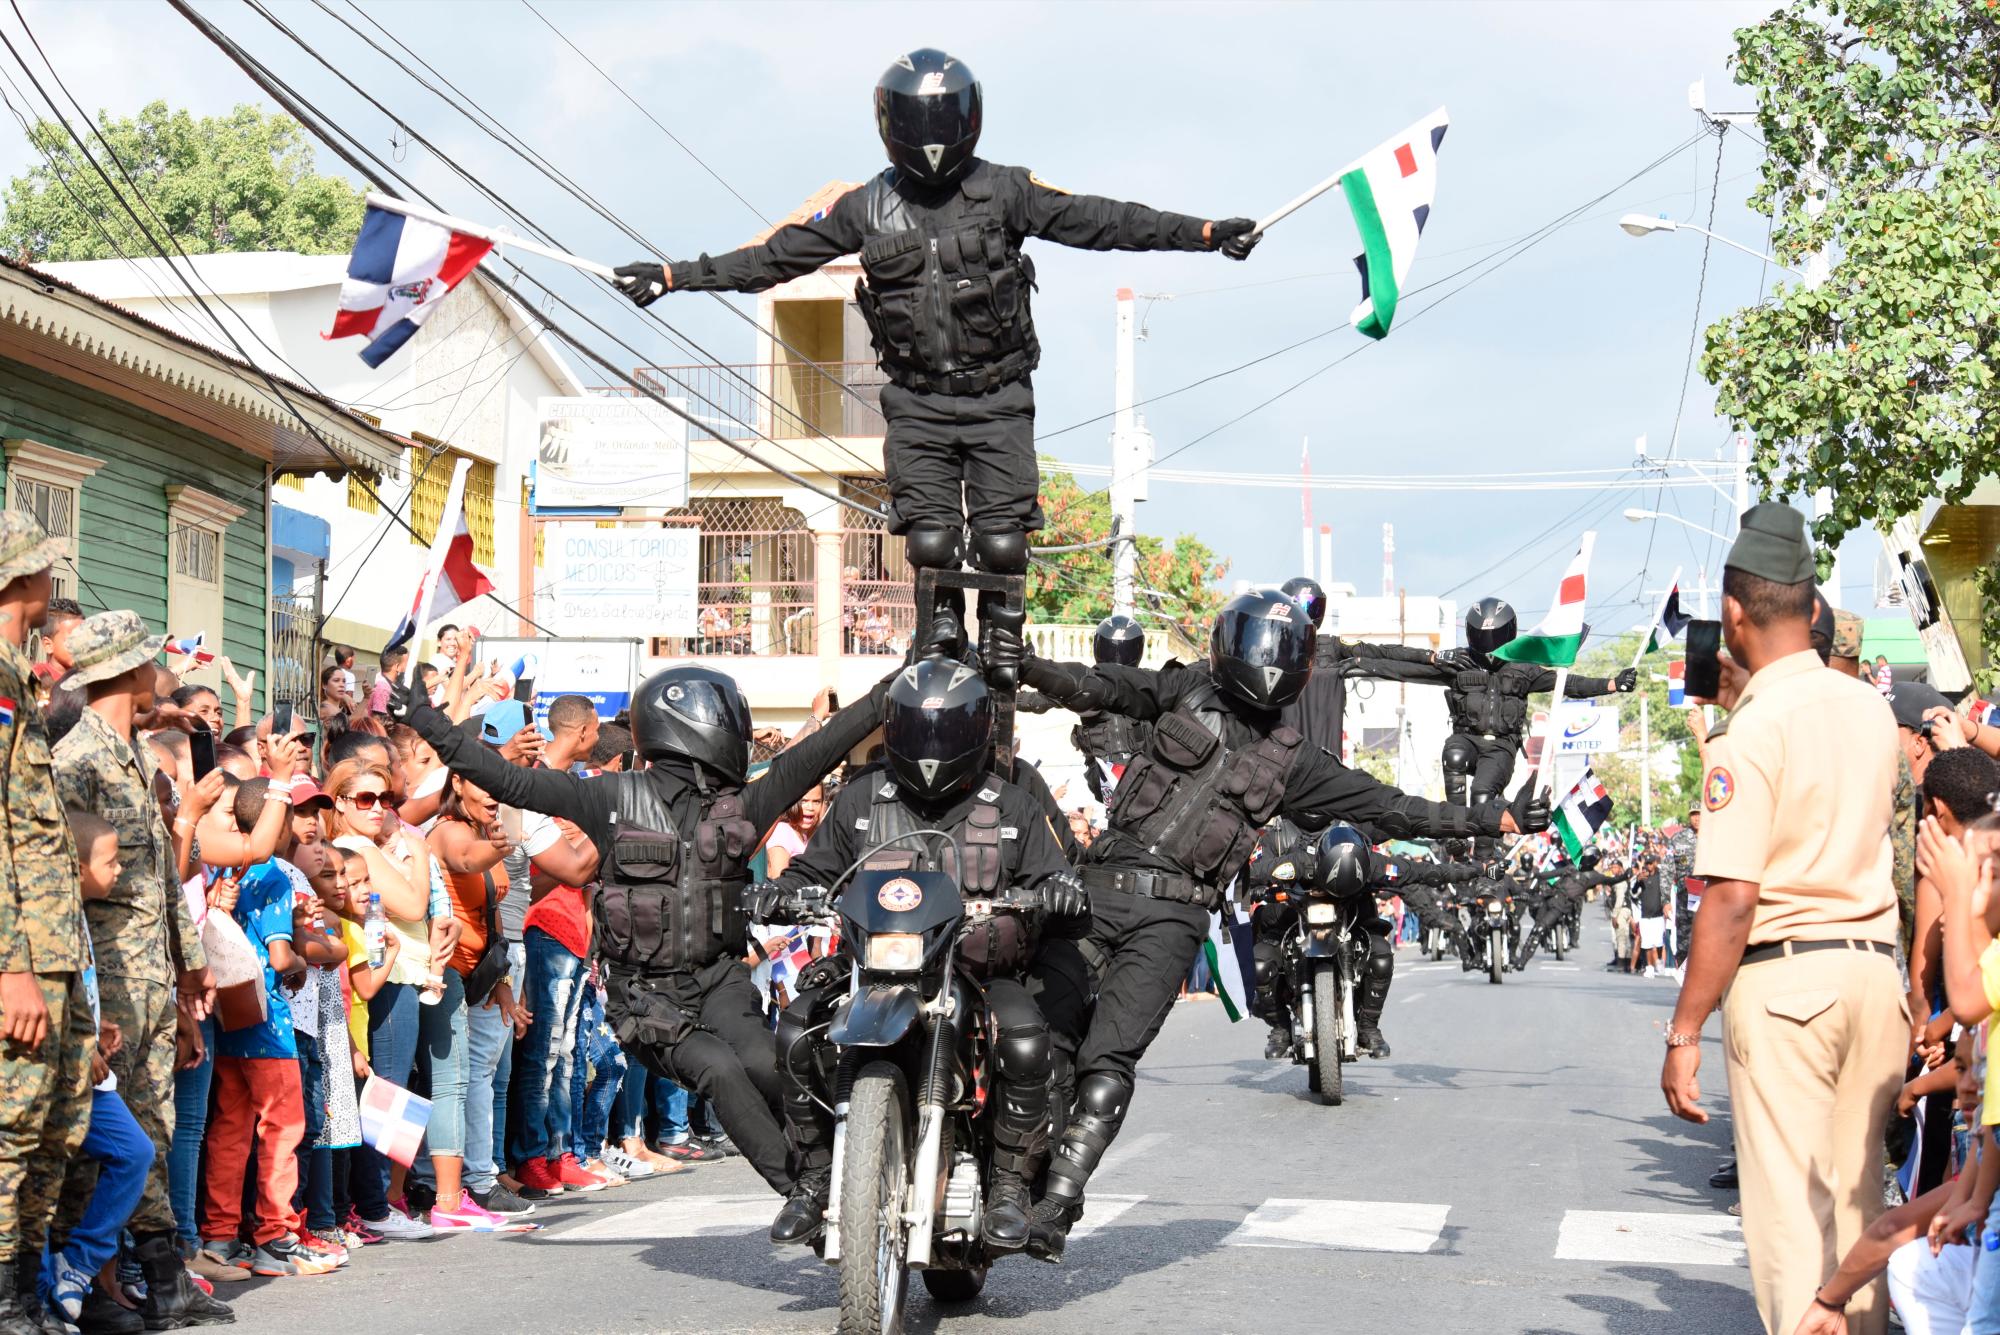 Agentes policiales llamados “Linces” se desplazan haciendo sus malabares el martes 19 de marzo de 2019 en la calle Duarte en la celebración del desfile cívico militar en la provincia de Azua con motivo de la conmemoración del 174 aniversario de la Batalla del 19 de Marzo.